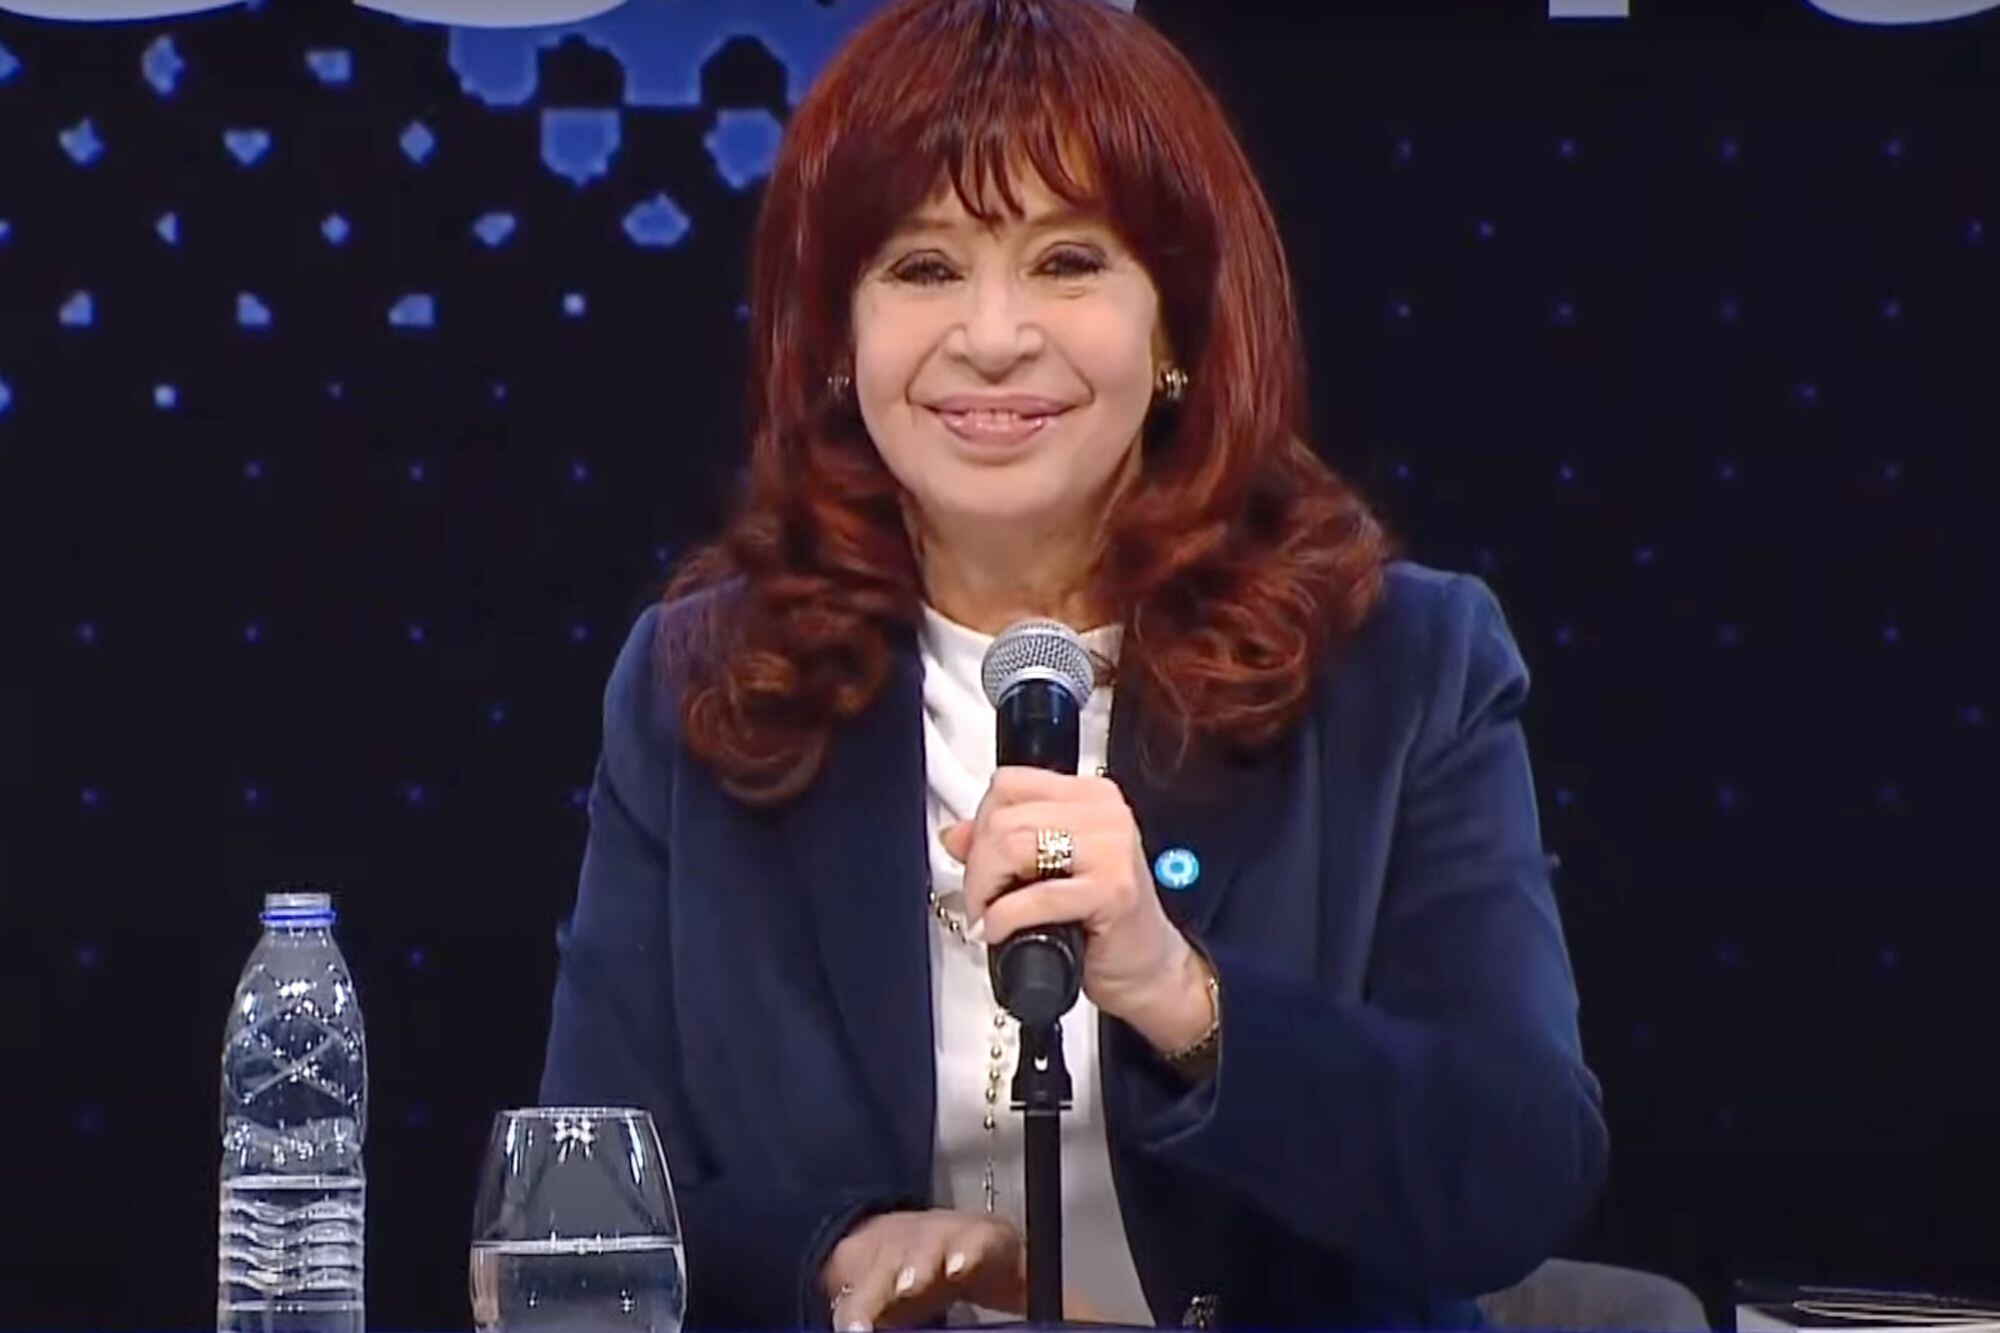 Cristina Kirchner da una charla sobre “castas, herencias, derrumbes y futuro” a un mes de las elecciones